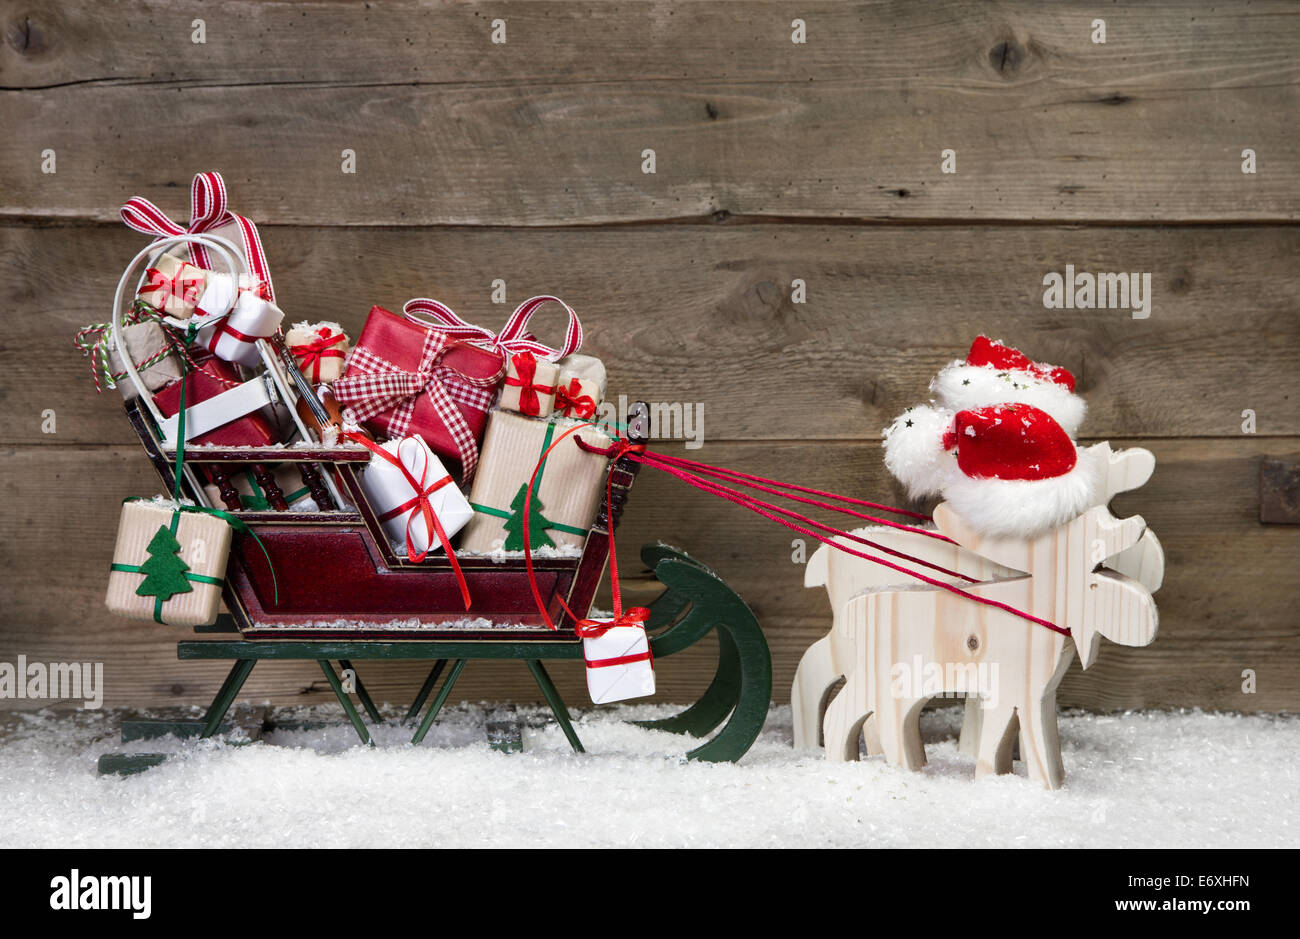 Weihnachtskarte-Dekoration: Elche Santa ziehen Schlitten mit Geschenken auf einem hölzernen Hintergrund - lustige Grußkarte im Landhausstil Stockfoto